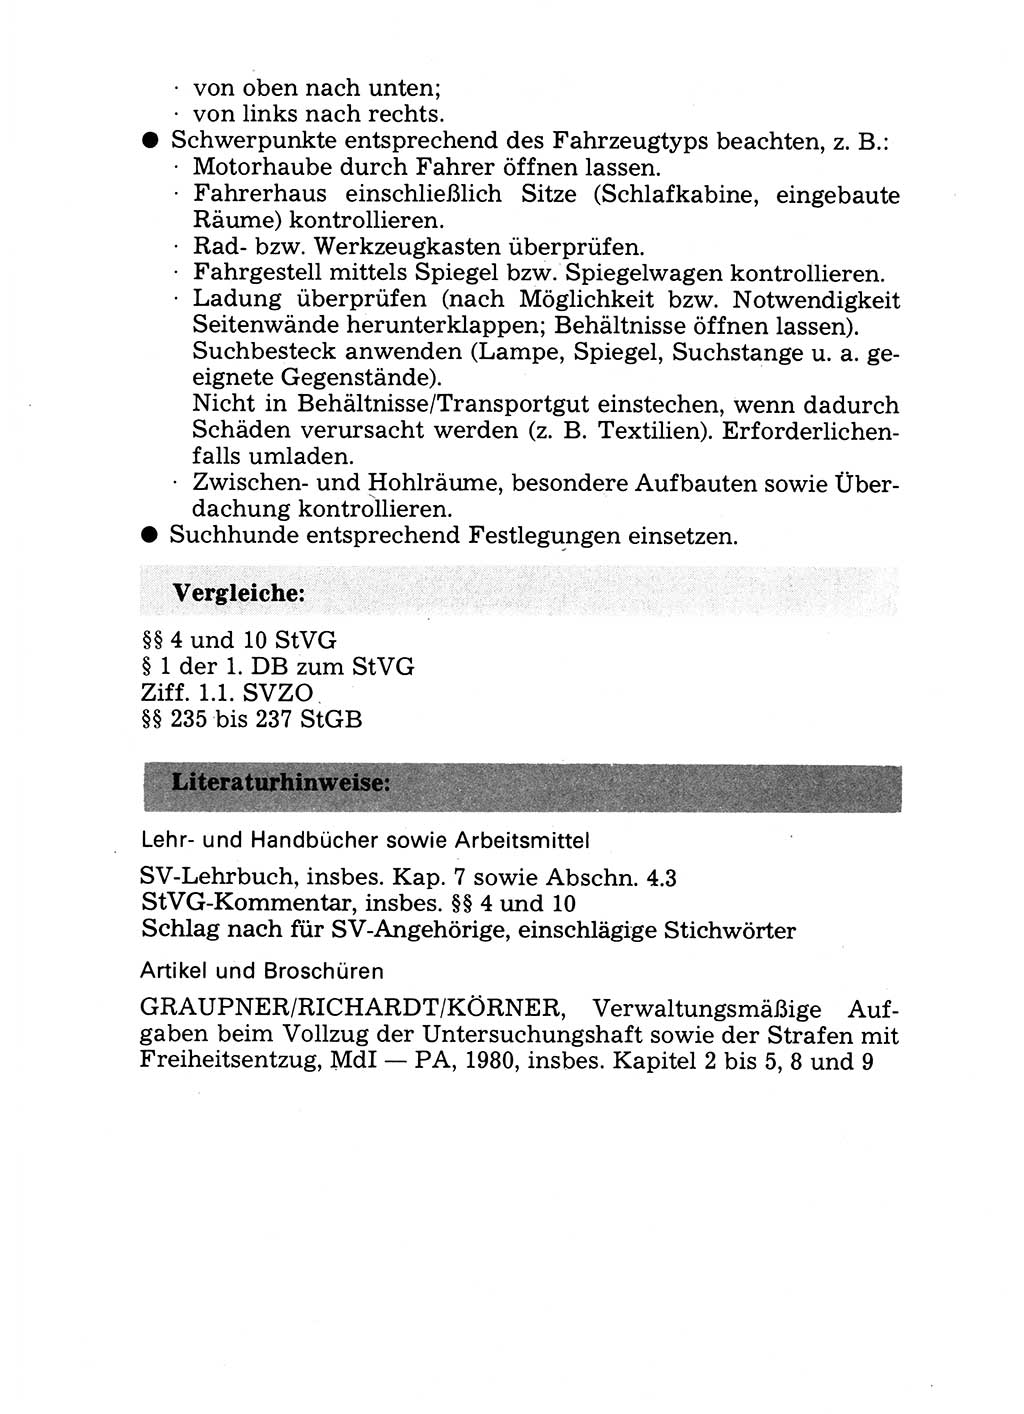 Handbuch für operative Dienste, Abteilung Strafvollzug (SV) [Ministerium des Innern (MdI) Deutsche Demokratische Republik (DDR)] 1981, Seite 59 (Hb. op. D. Abt. SV MdI DDR 1981, S. 59)